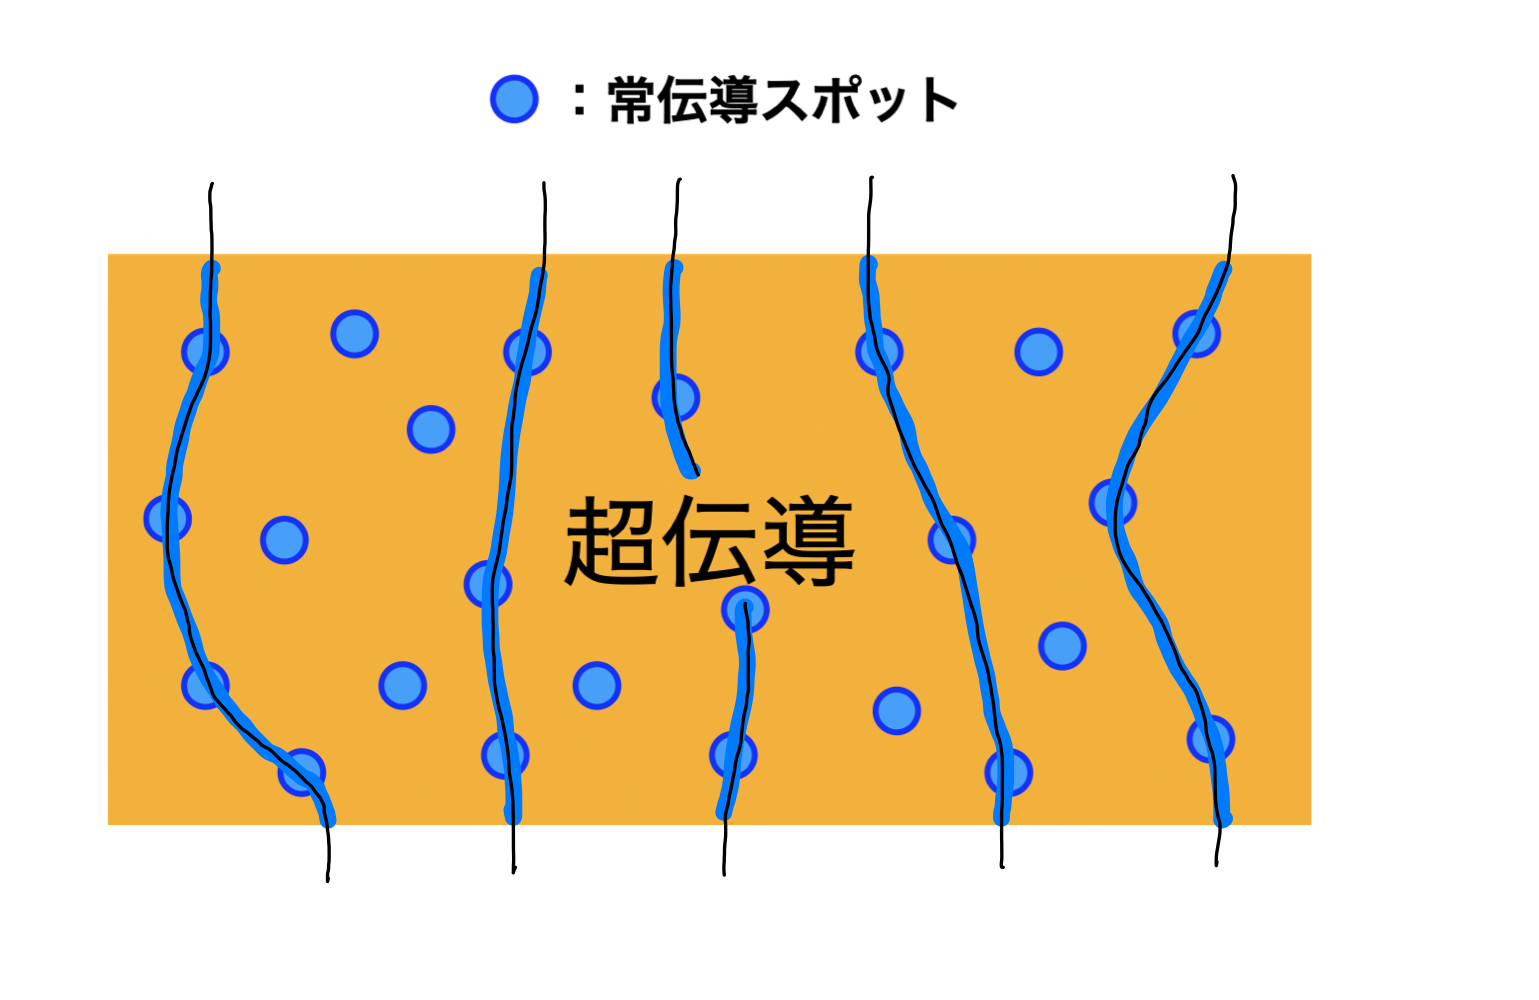 ピン留めの概念図。青い部分は常伝導状態。エネルギーを下げるため、磁束（黒い線）は常伝導スポットを通る。